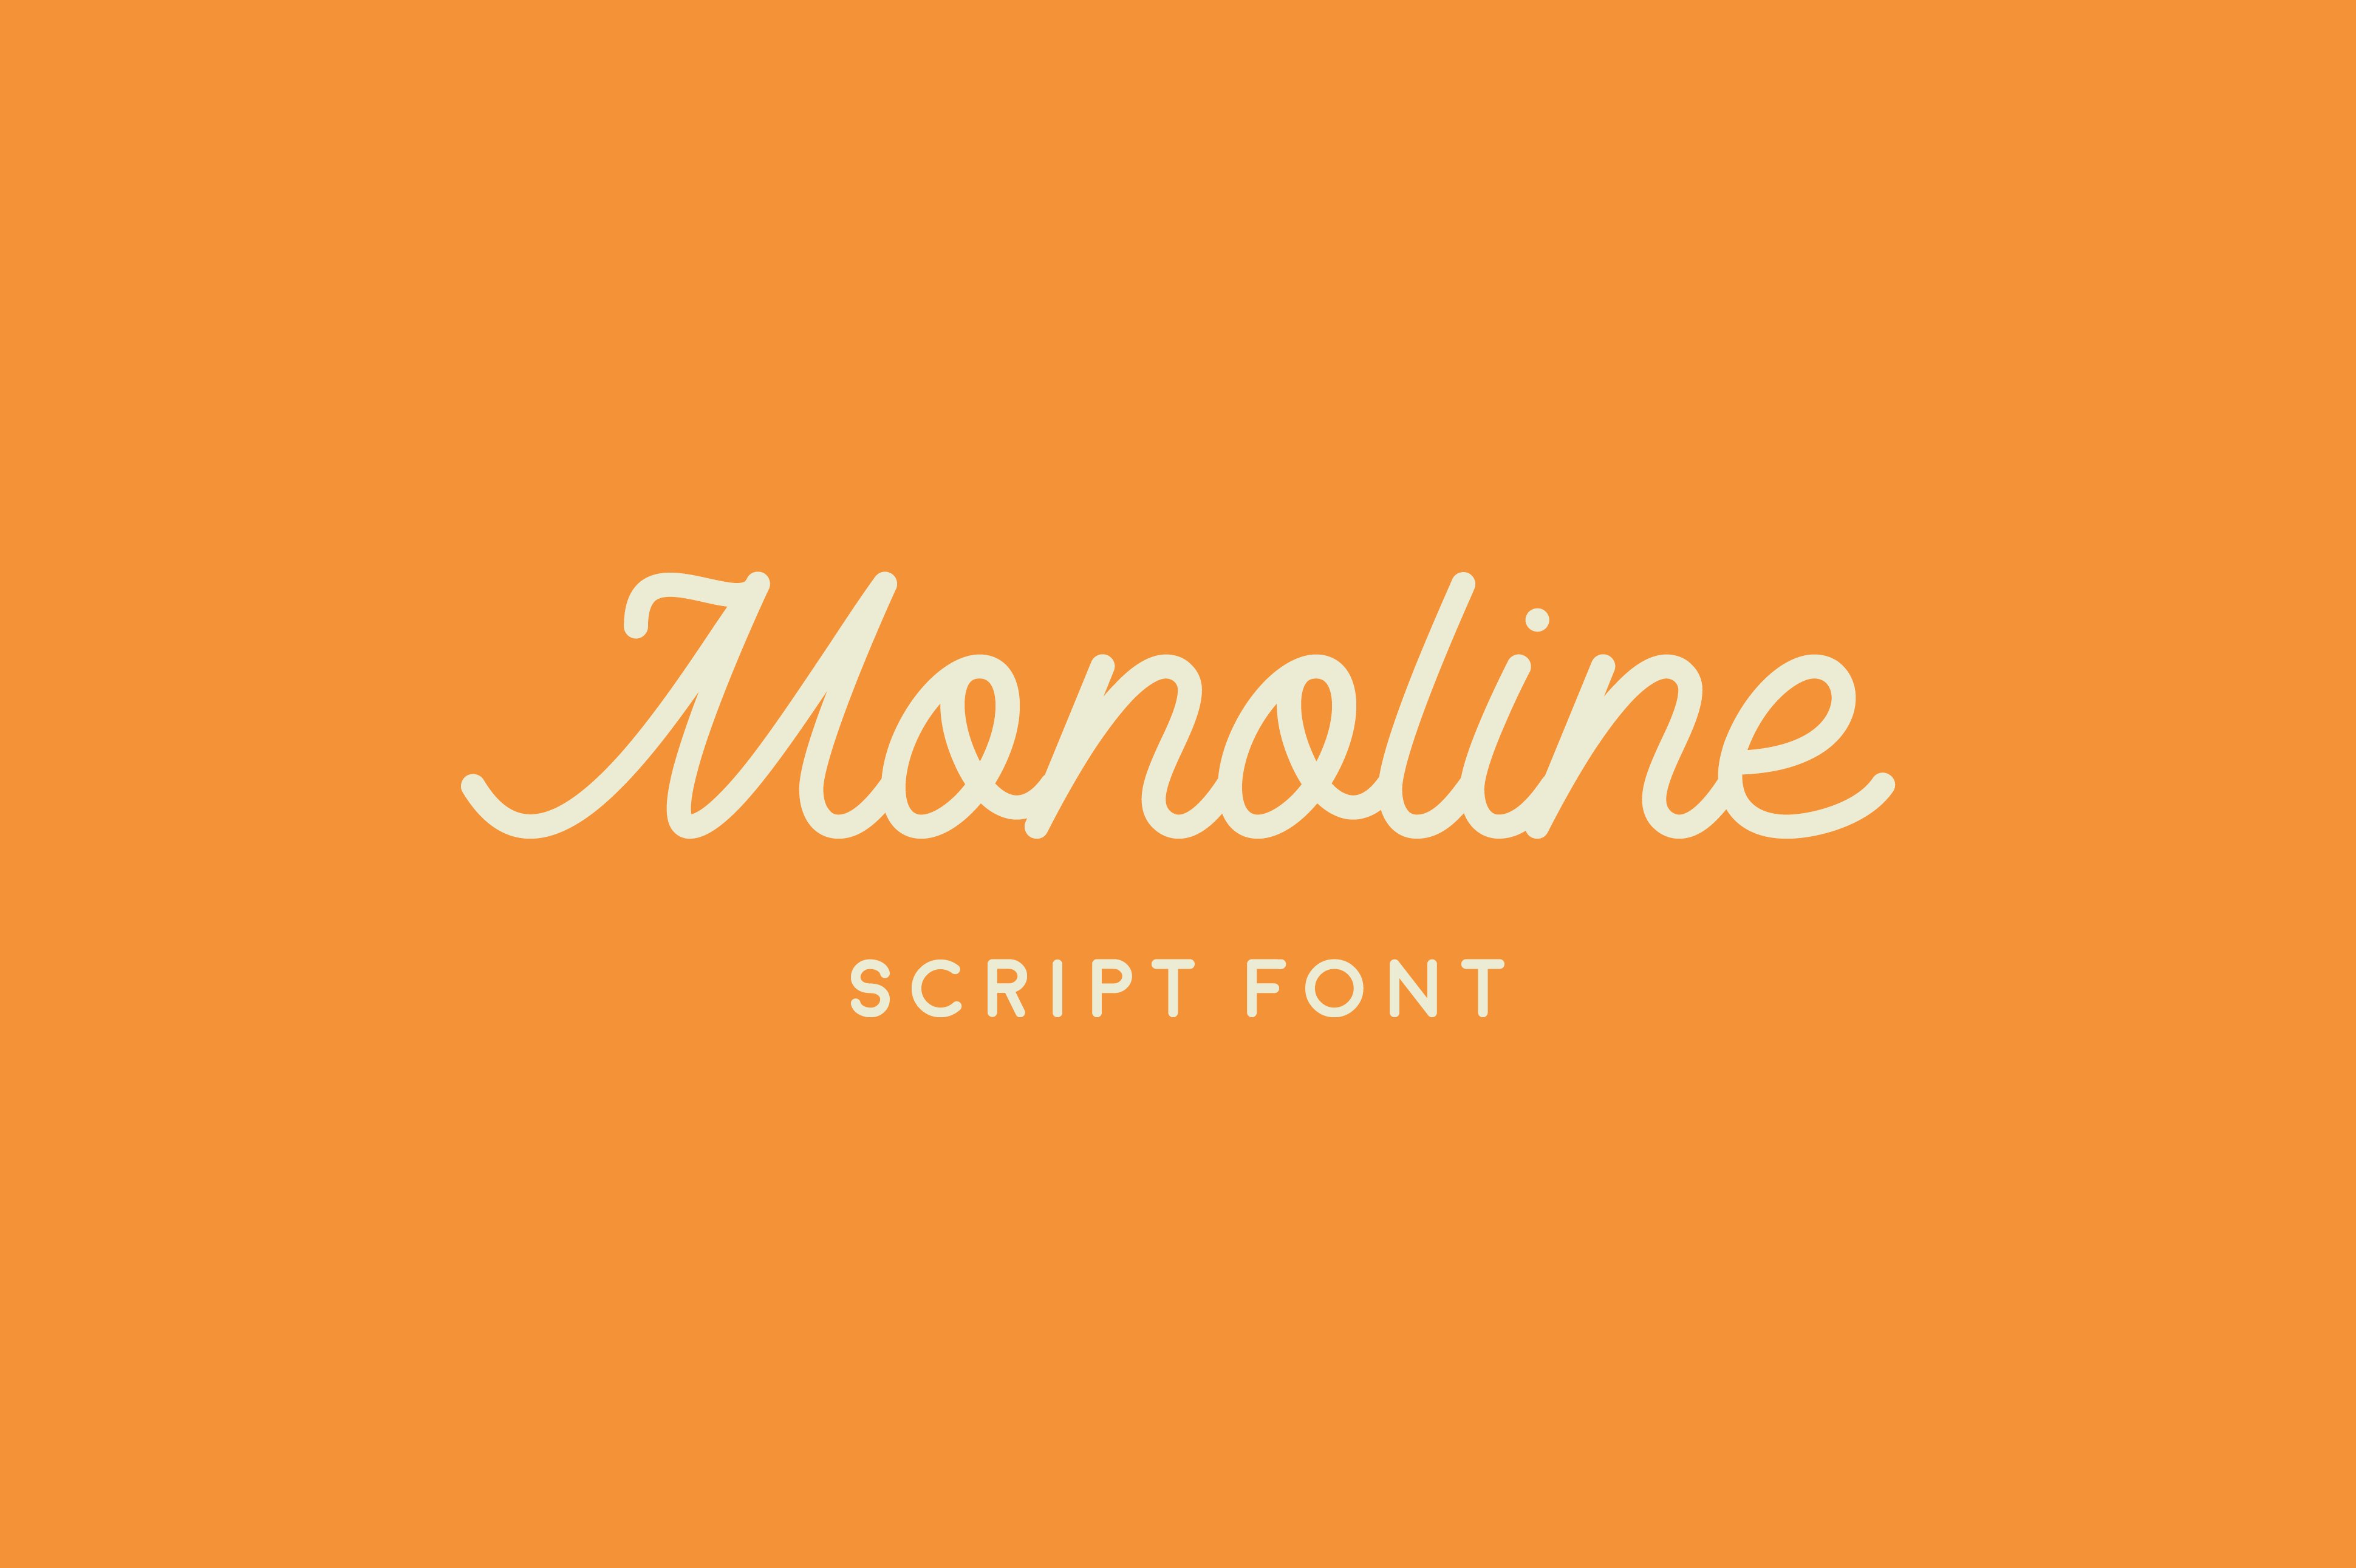 Font Monoline Script